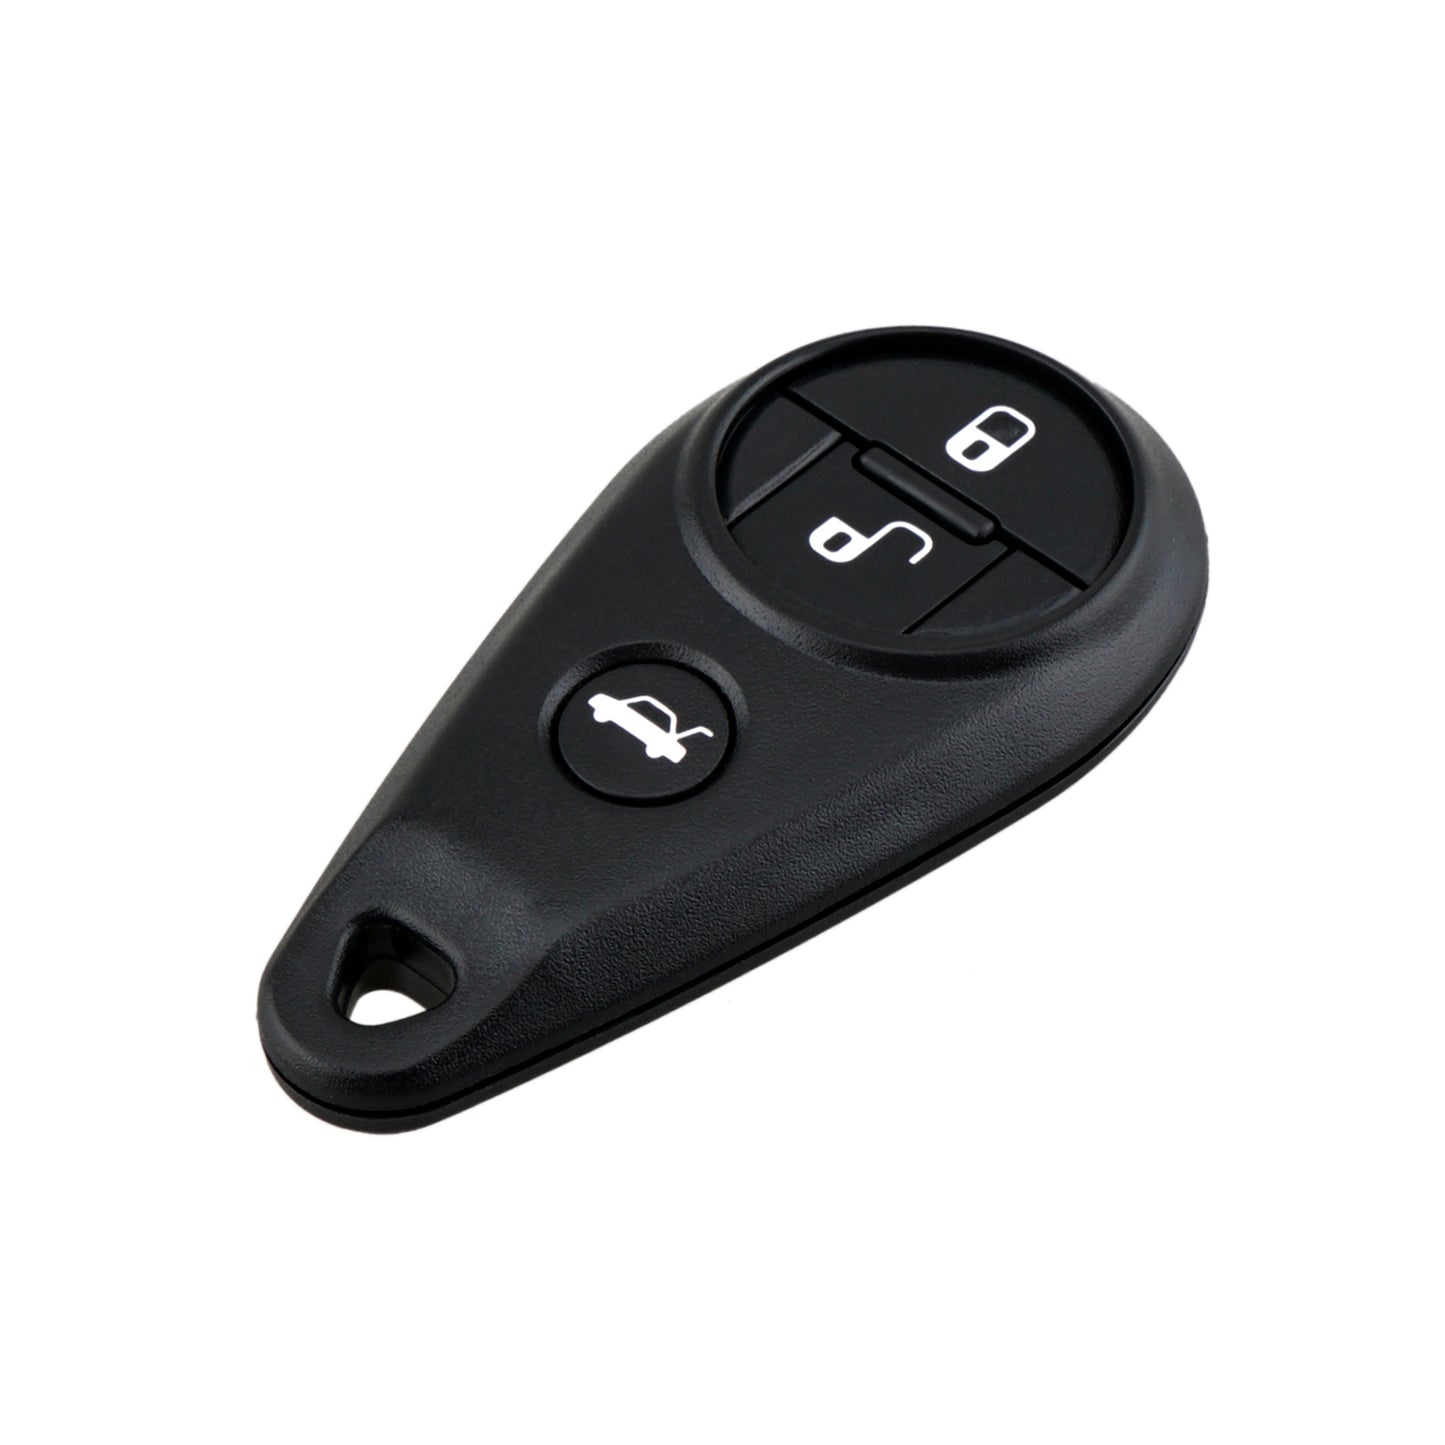 4 Buttons 315MHz Keyless Entry Fob Remote Car Key For 2010 - 2014 Subaru Forester WRX/STI FCC ID: CWTWB1U819  SKU : J589